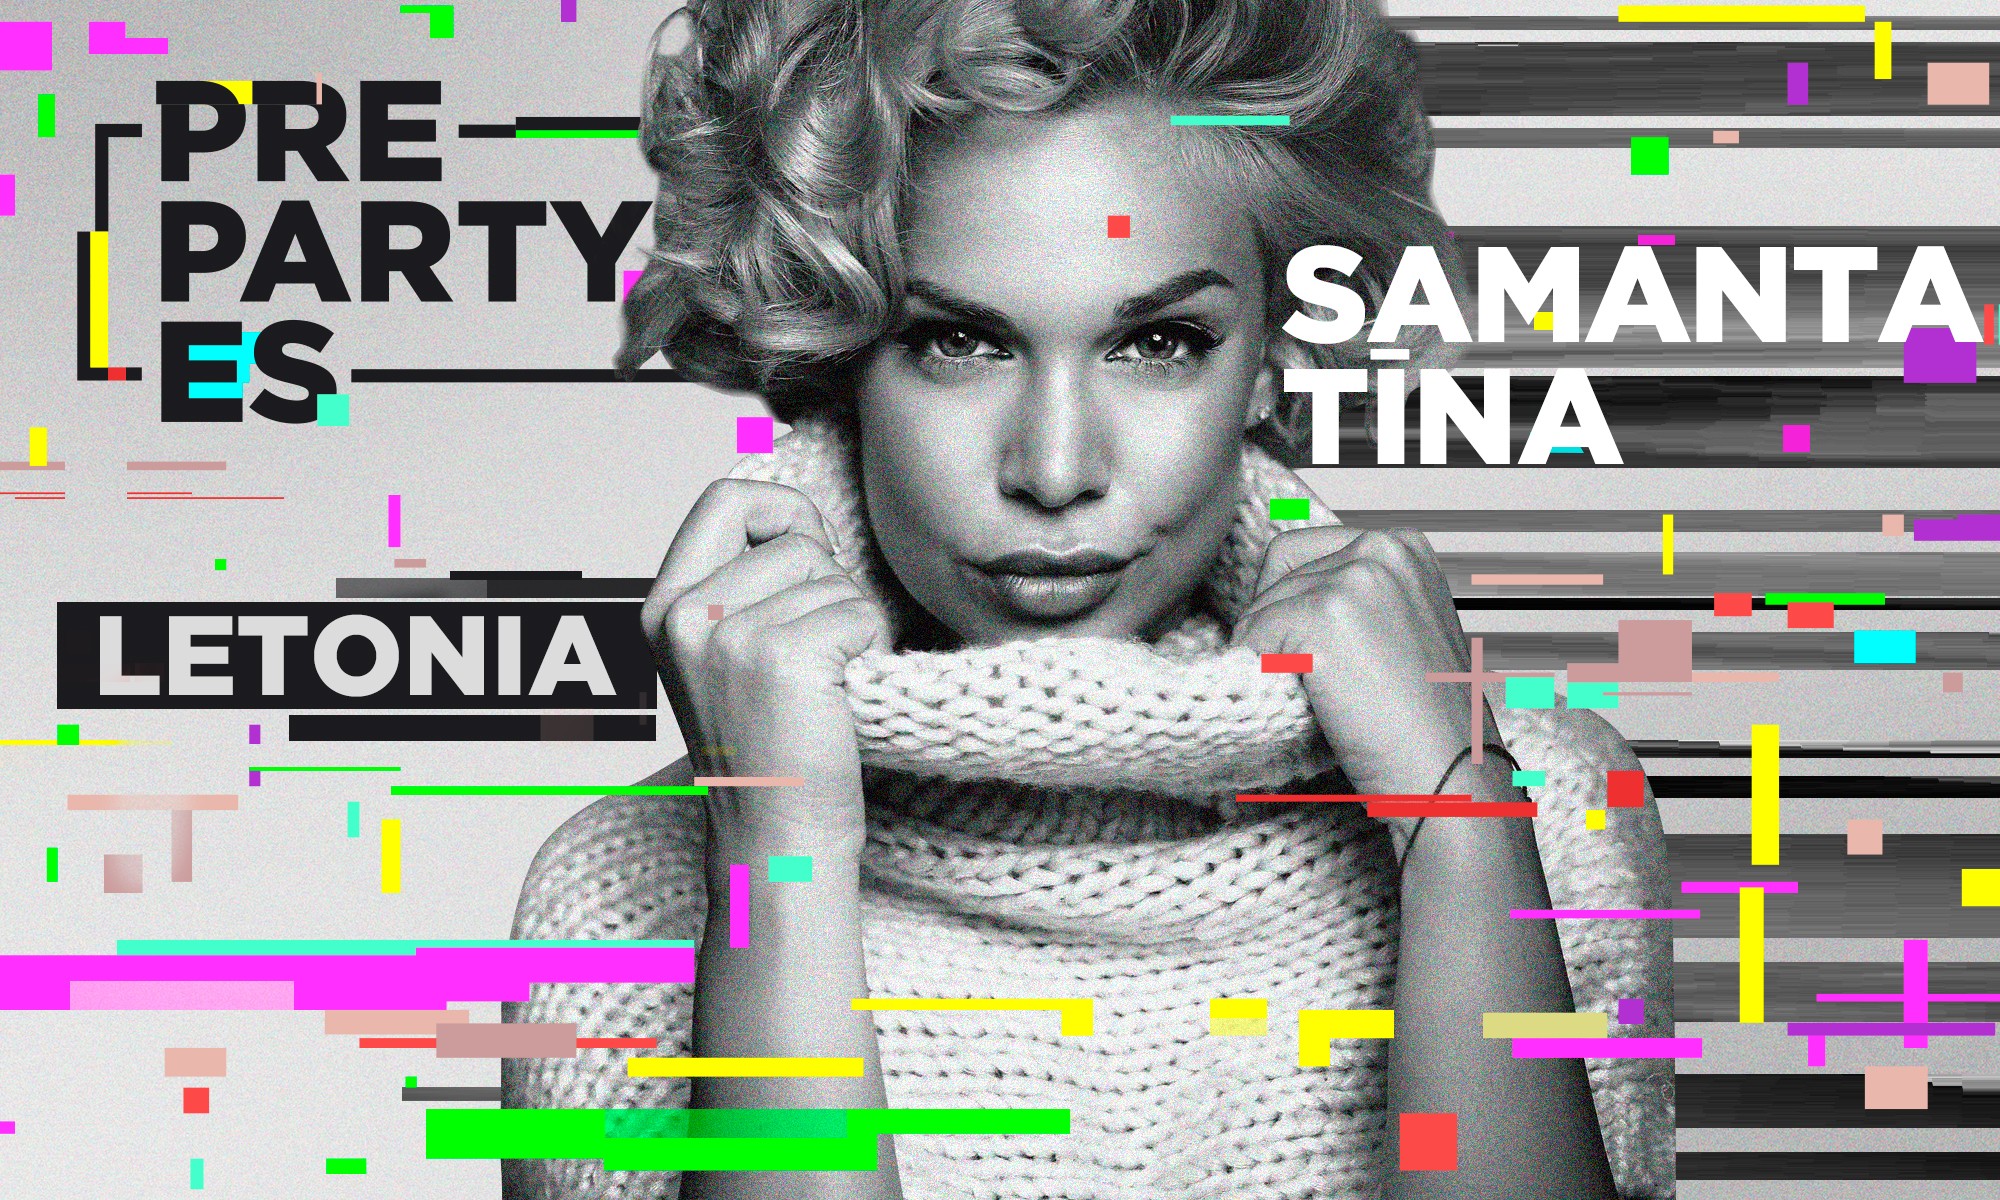 ¡La letona Samanta Tina cantará en la #PrePartyES20!